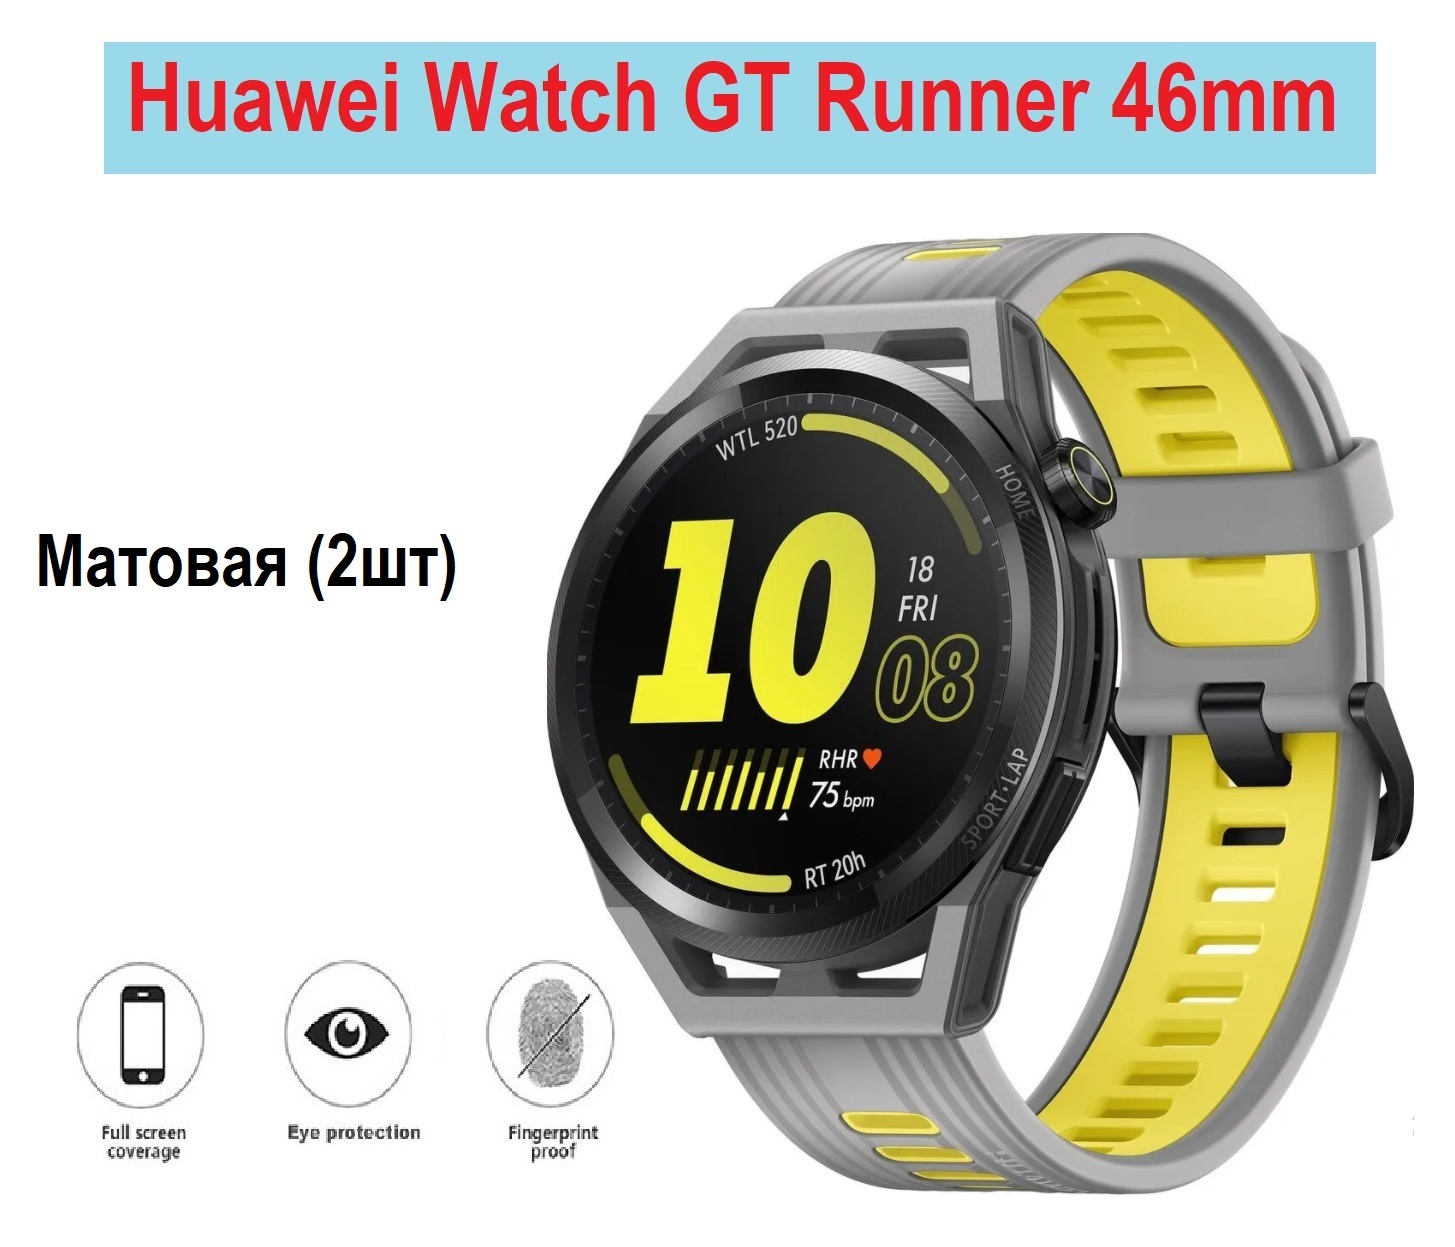 Huawei watch gt4 46mm цены. Смарт-часы Хуавей gt4. Хуавей вотч gt раннер. Смарт часы Huawei gt4. Huawei смарт-часы Huawei gt Runner.